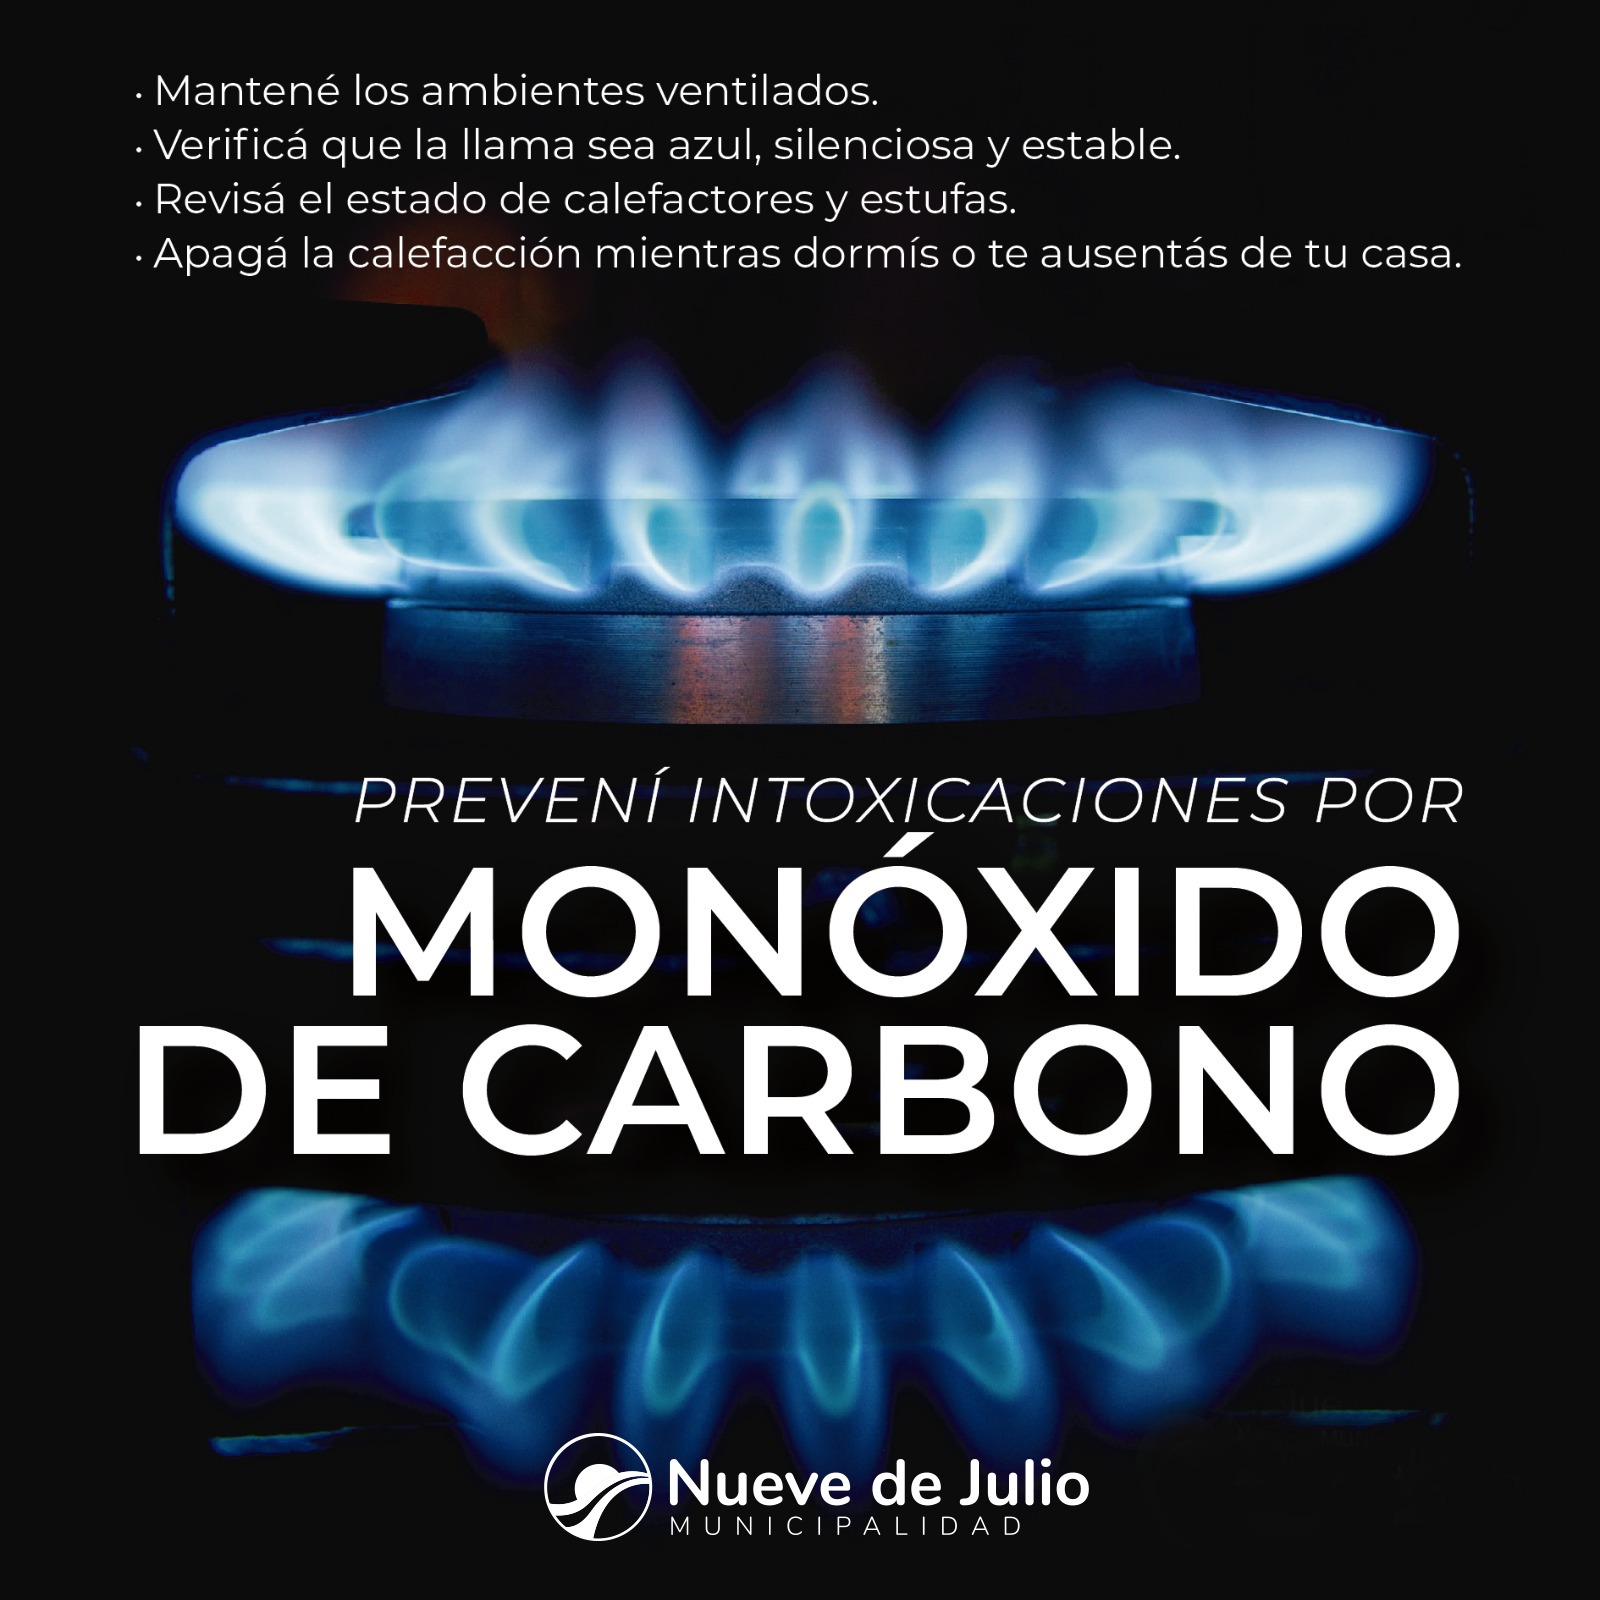 PREVENCIÓN DE INTOXICACIONES CON MONÓXIDO DE CARBONO